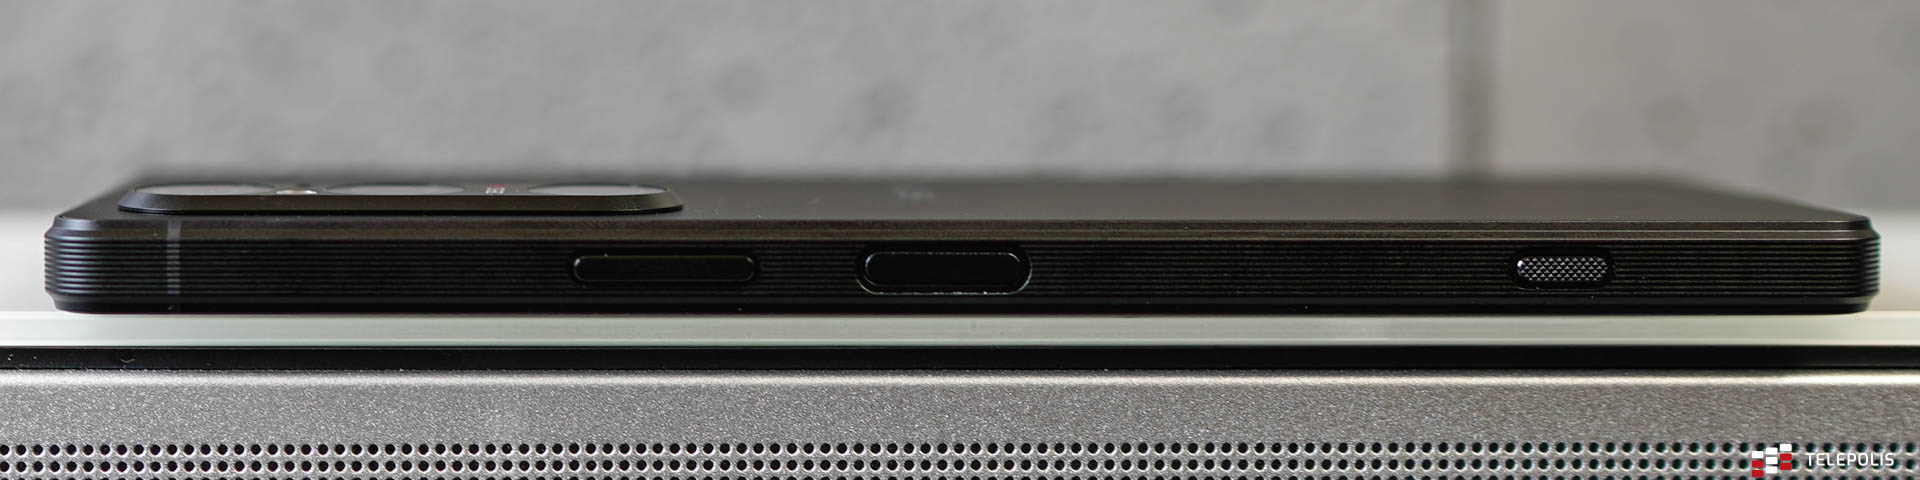 Sony Xperia 1 V prawy bok